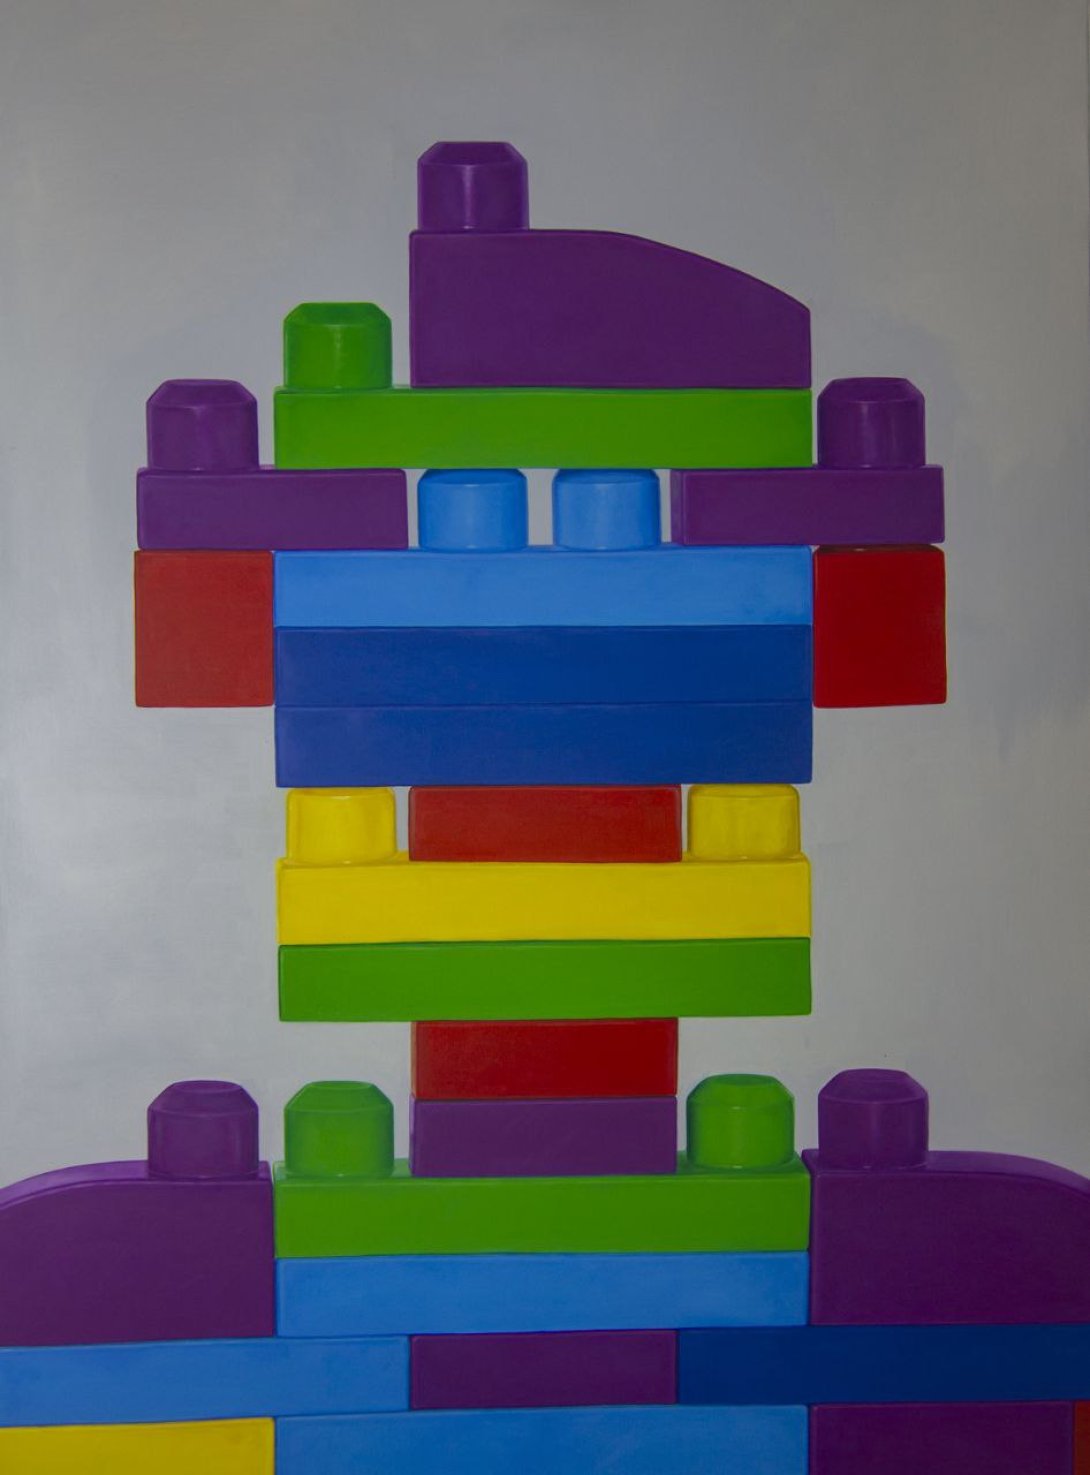 Obra de la serie "ID", de Abel Monagas Alfonso, bloques LEGO que conforman la silueta de un rostro